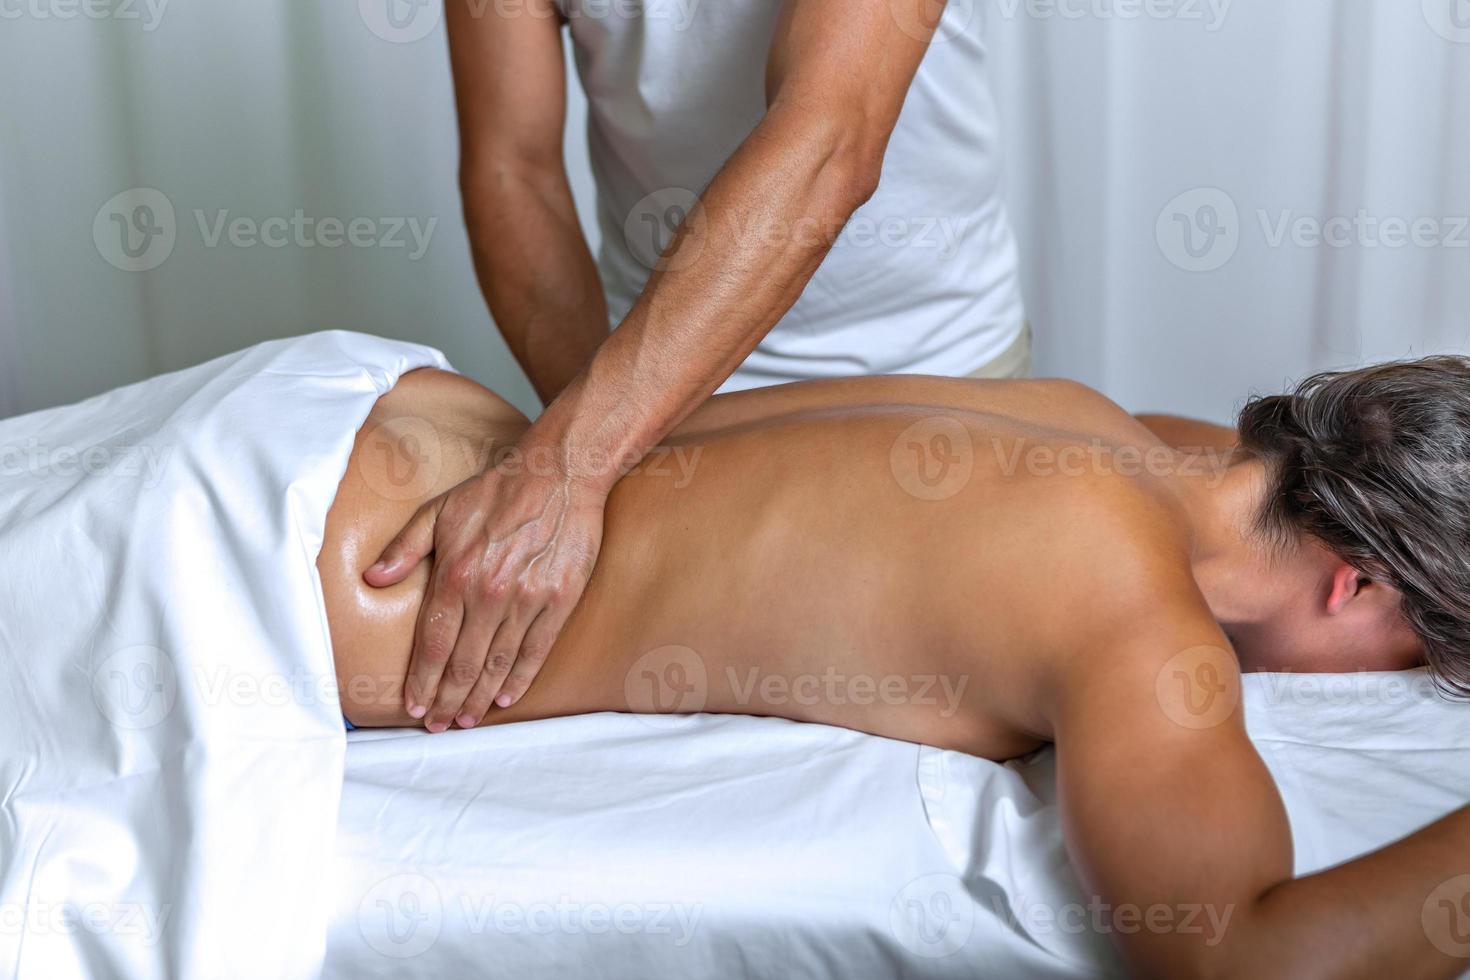 vrouw aan het liegen gezicht naar beneden ontvangen een terug massage in Gezondheid spa foto